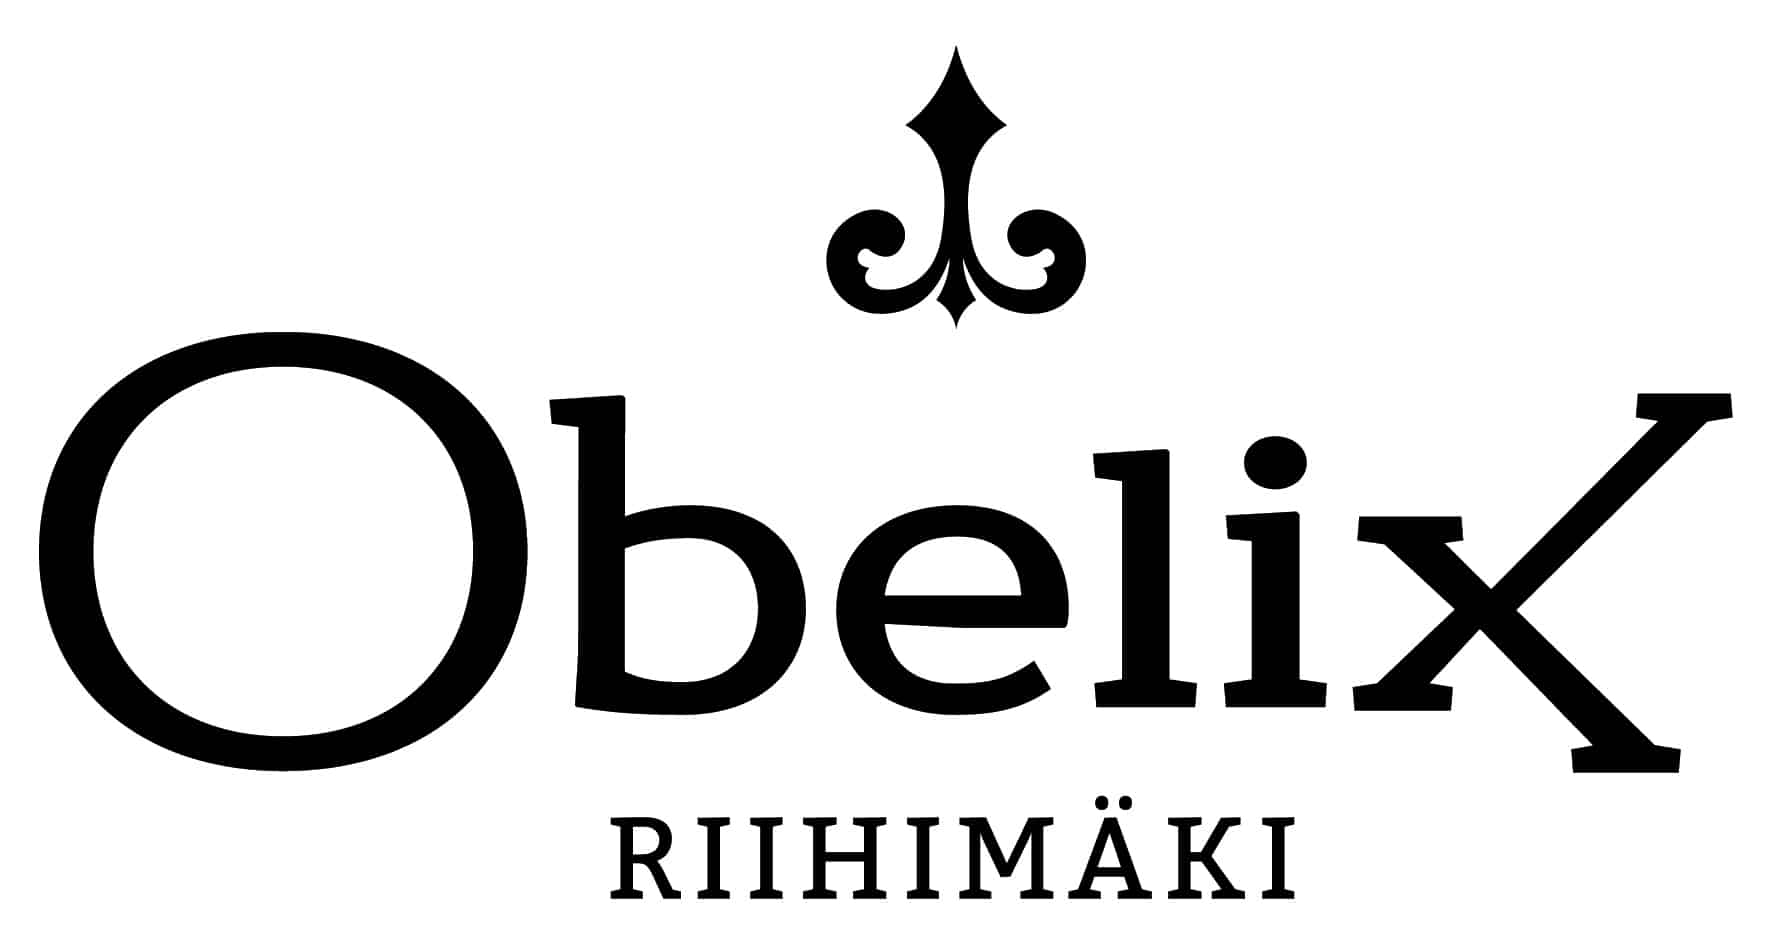 Ravintola Obelix Riihimäki